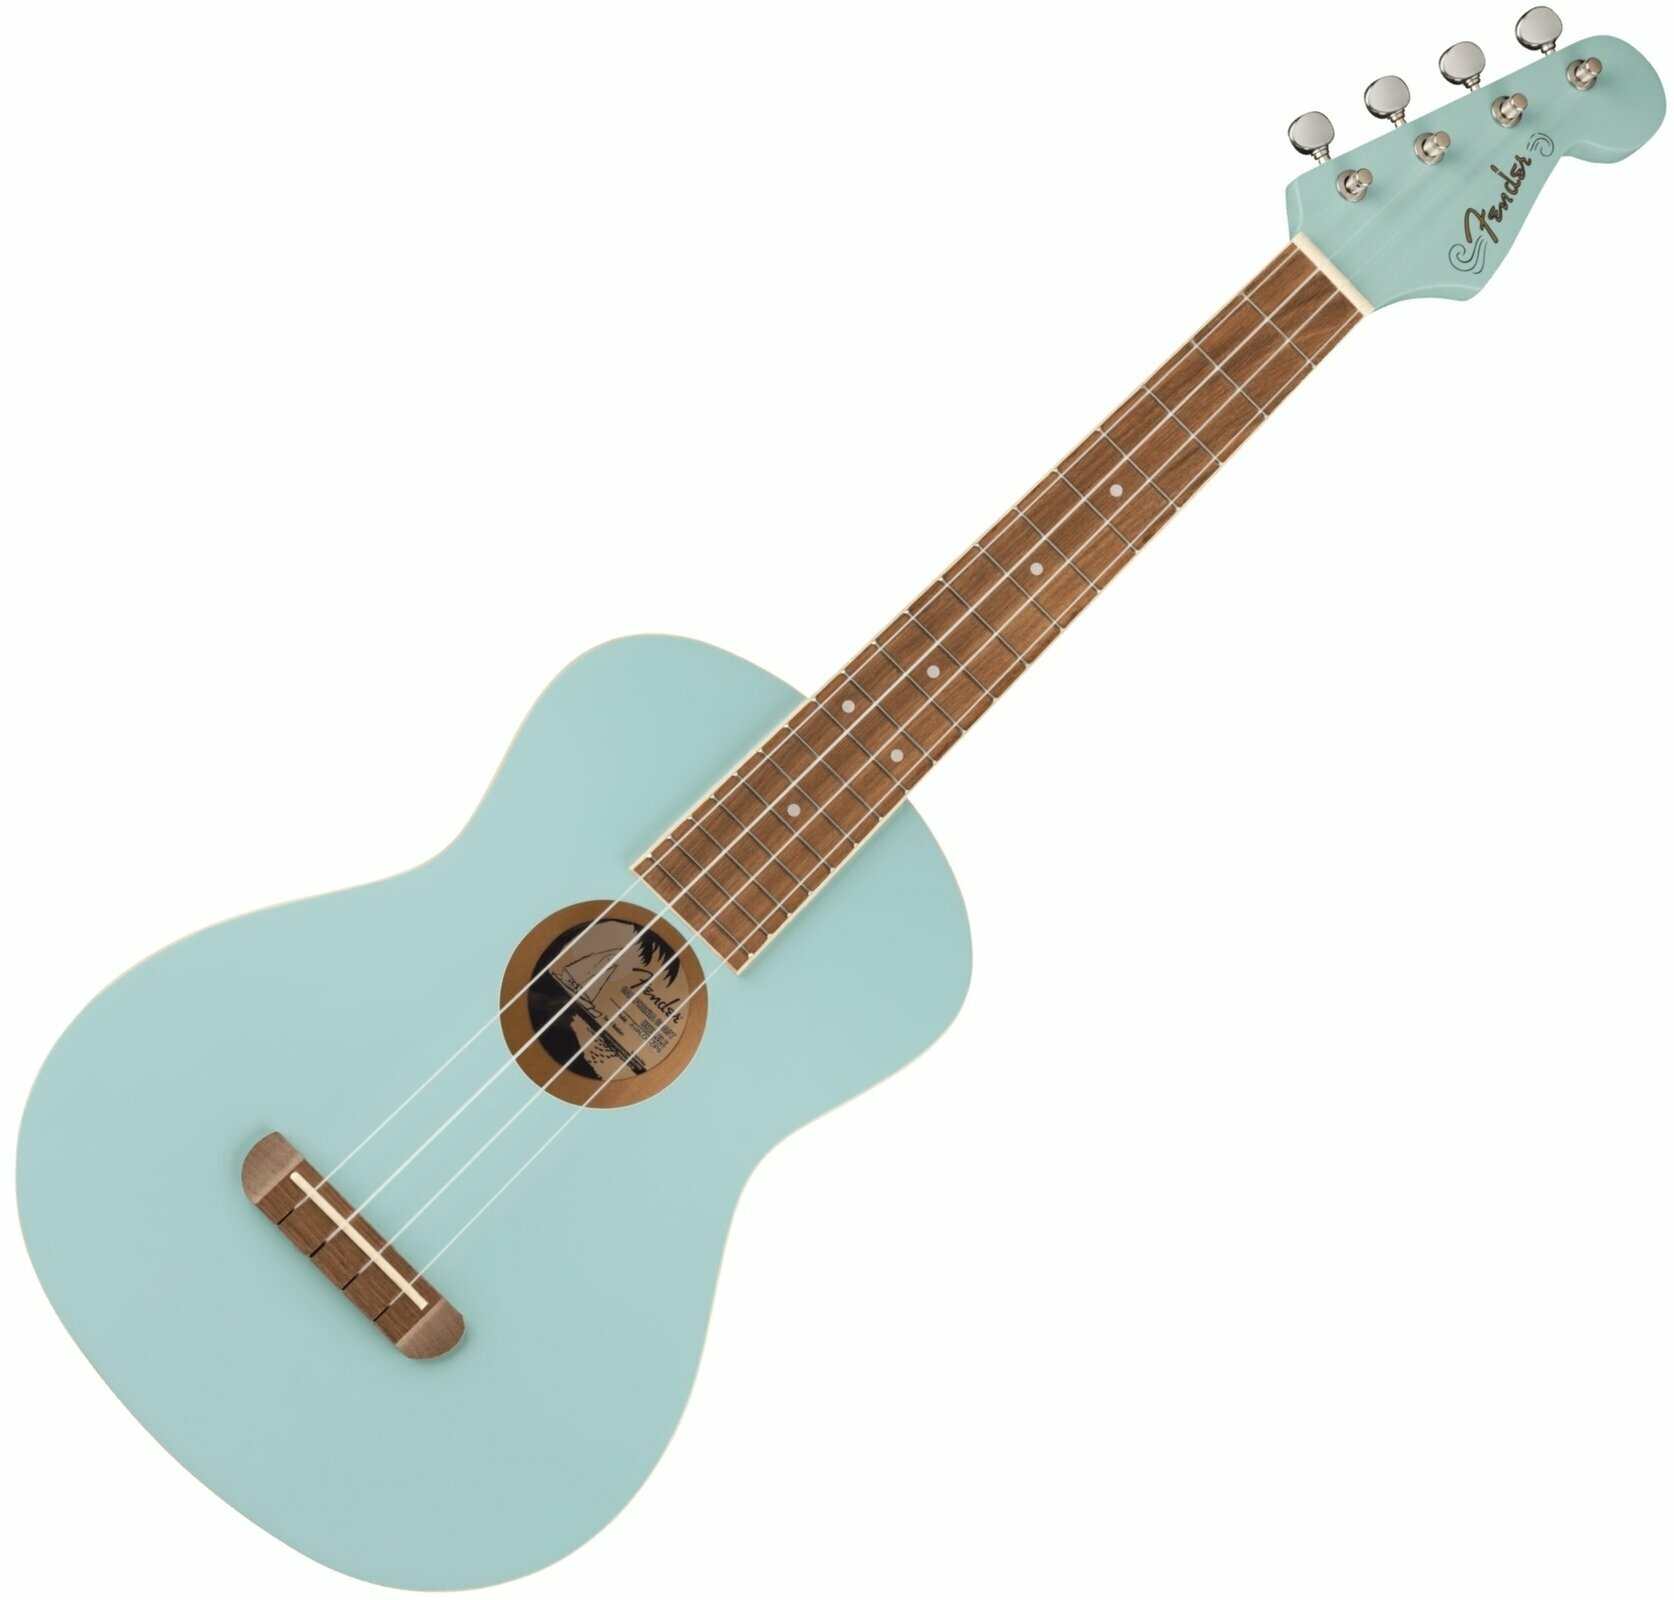 Tenori-ukulele Fender Avalon Tenor Ukulele WN Tenori-ukulele Daphne Blue